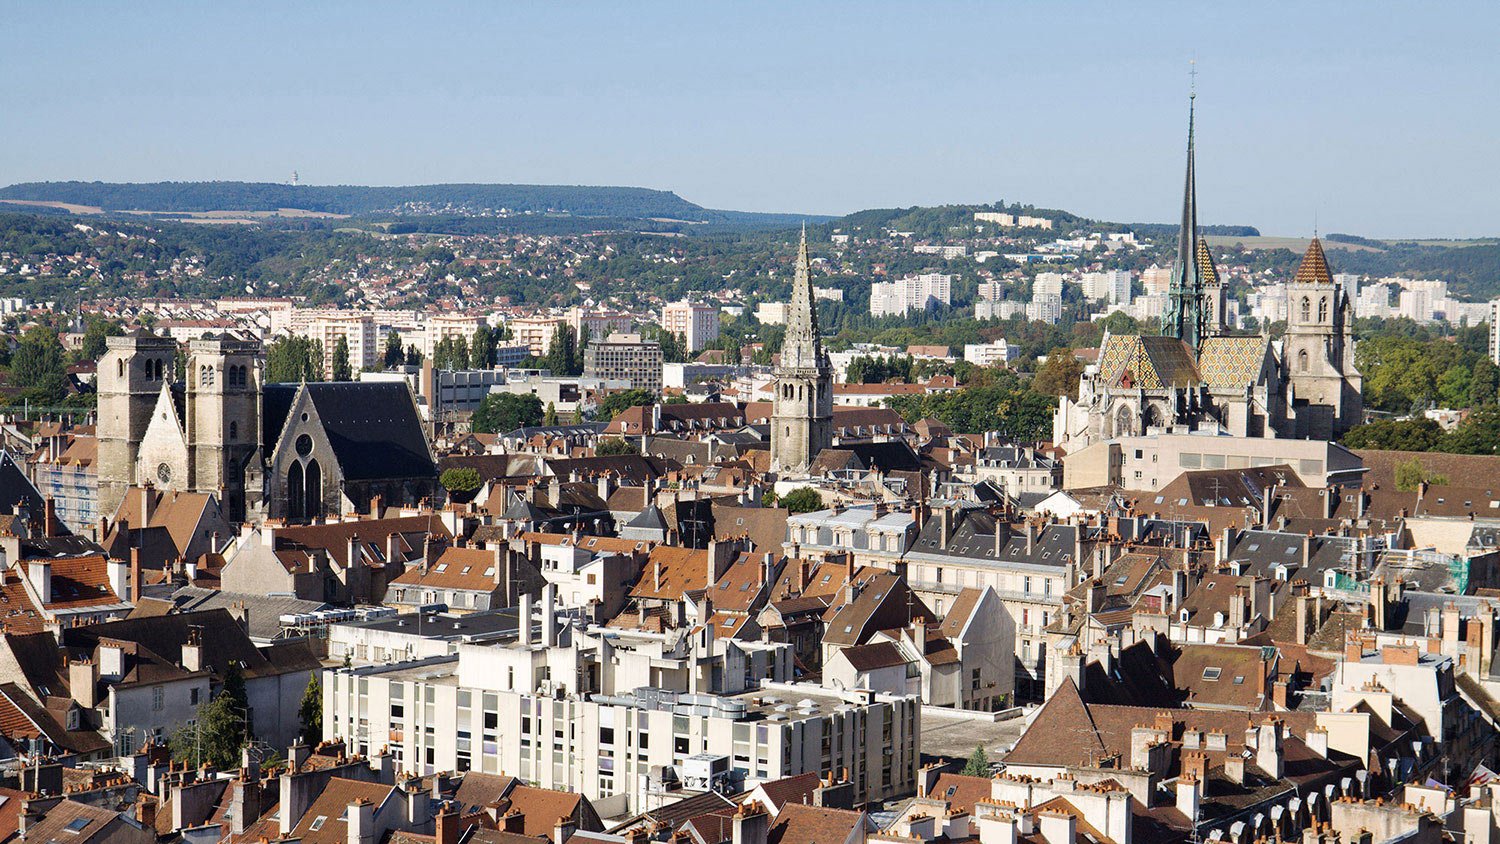 Dijon metropole attribue au groupement bouygues energies services et citelum groupe edf avec suez et capgemini le contrat pour la gestion connectee de lespace public